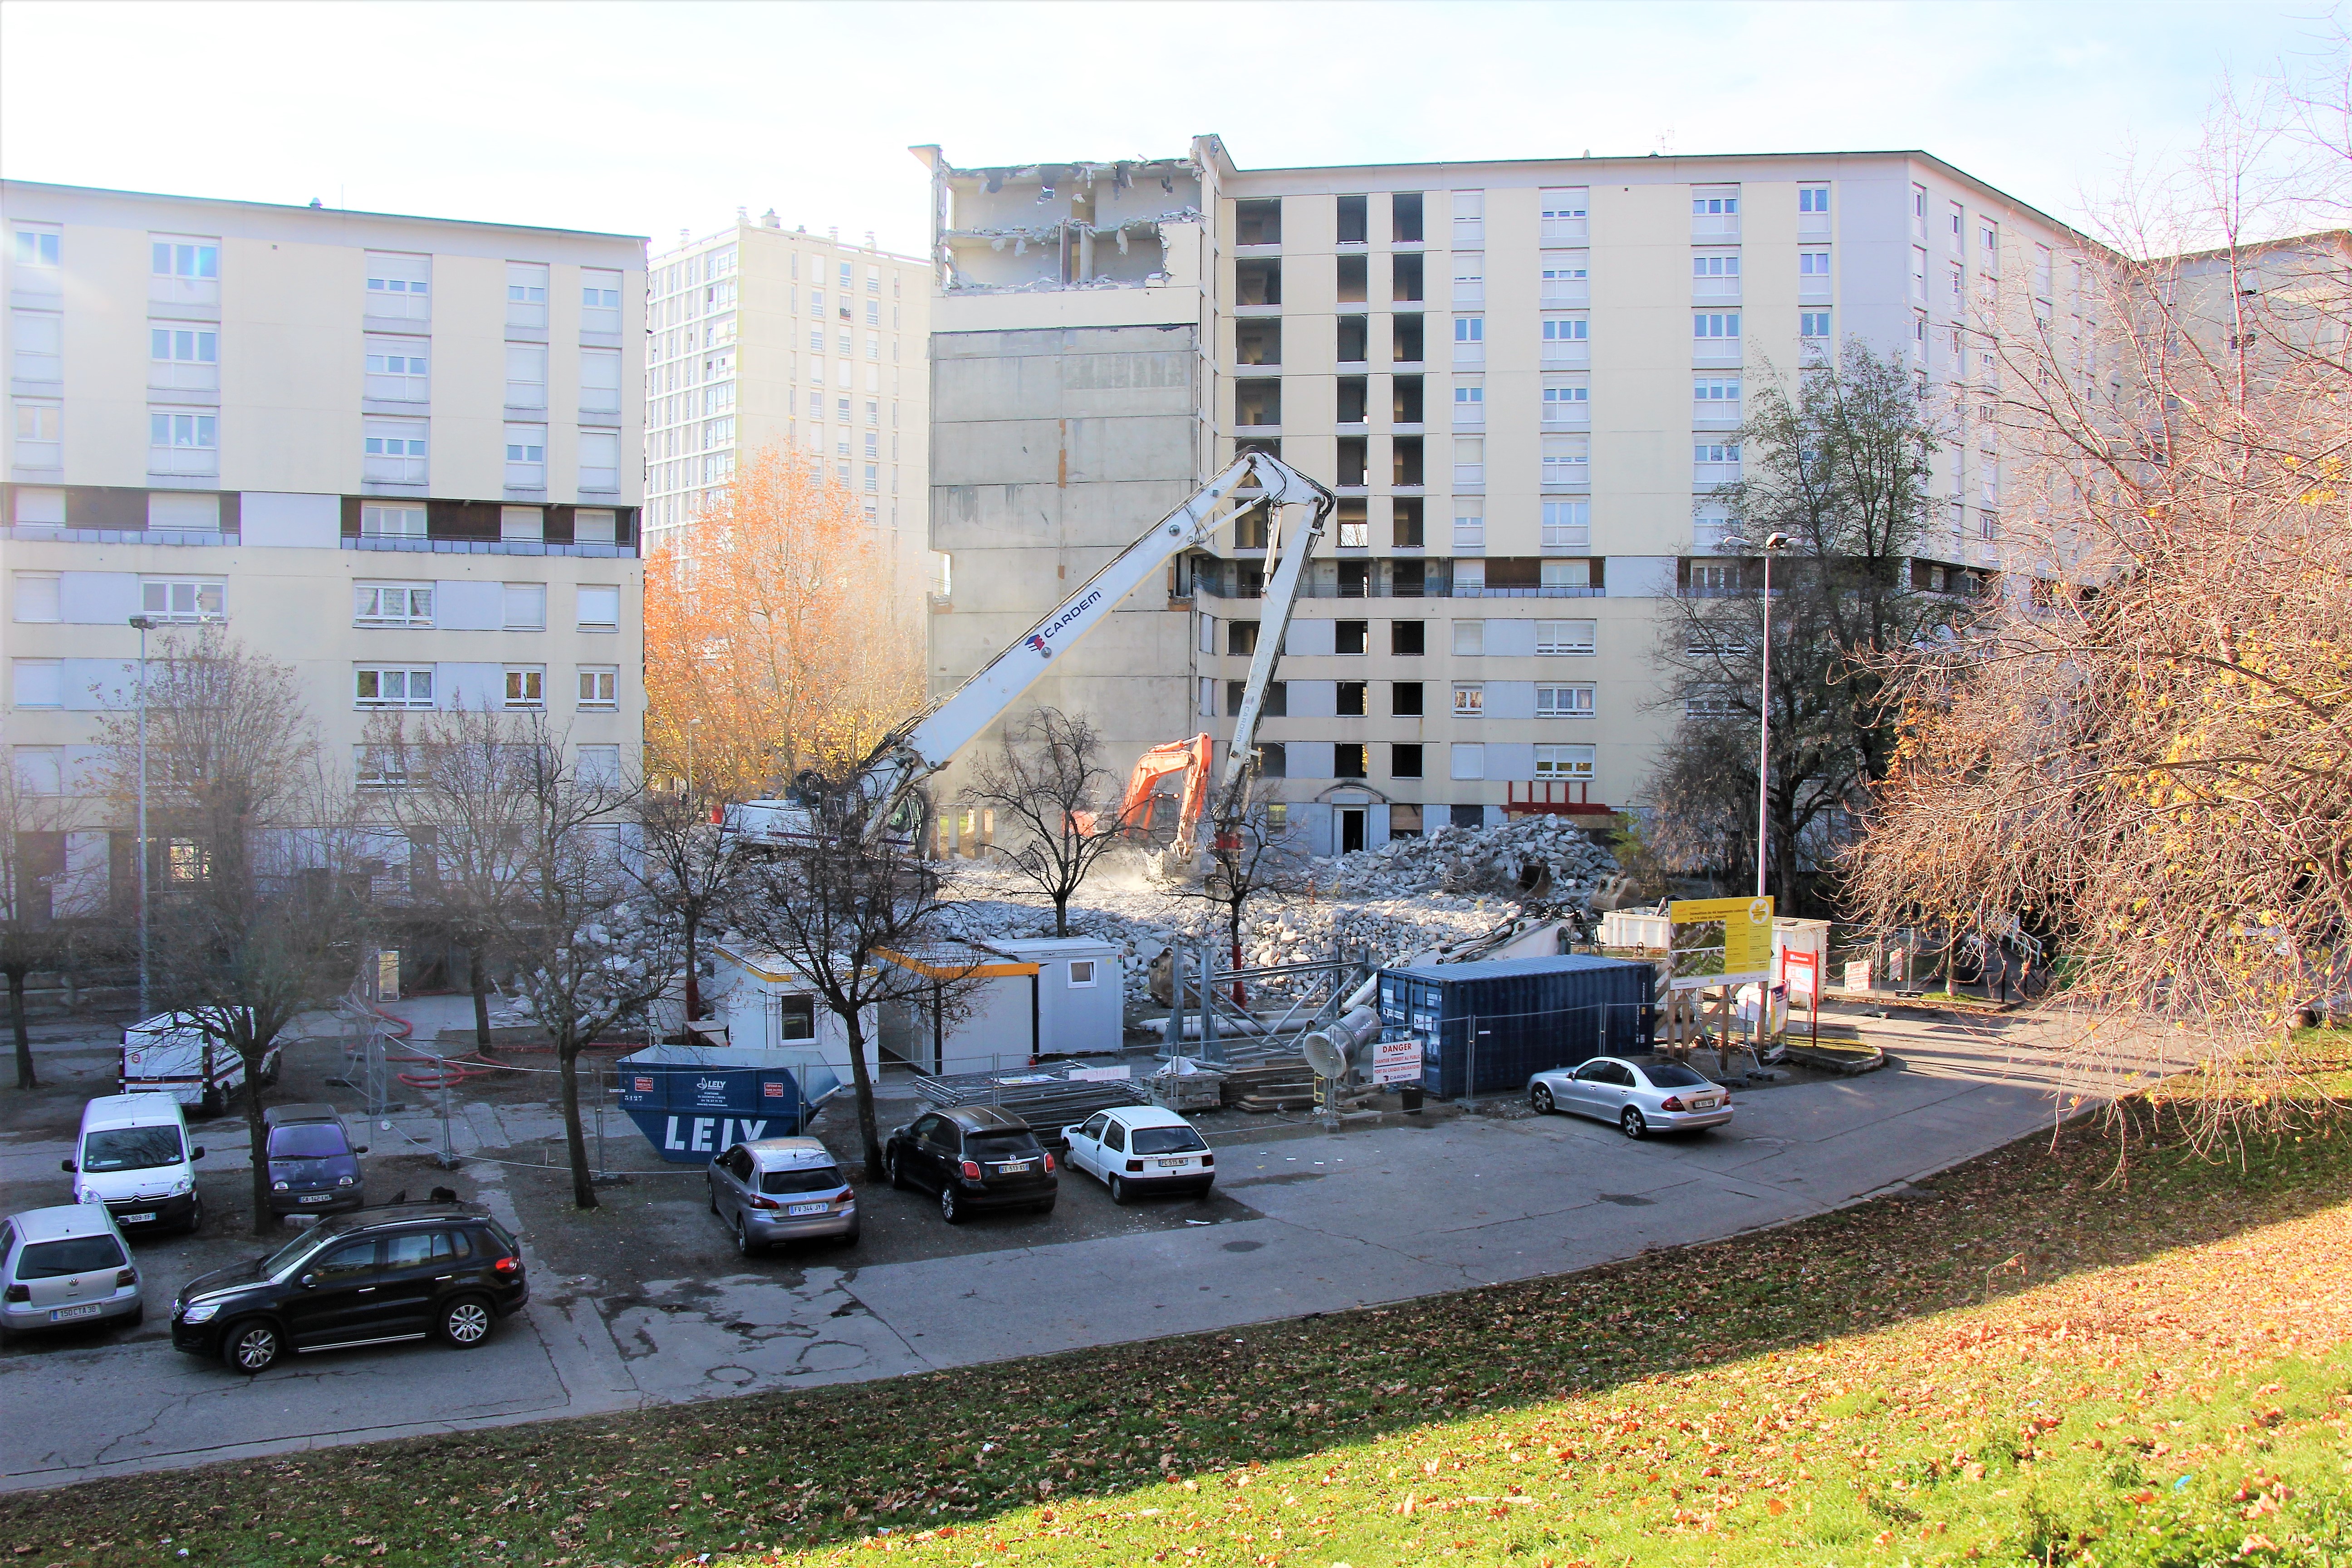 Lancé le 23 novembre, le chantier de démolition des 7 et 9 allées du Limousin devrait s'achever fin janvier 2021, avec la remise en état des abords. Nous voyons une grue démolissant progressivement les immeubles.